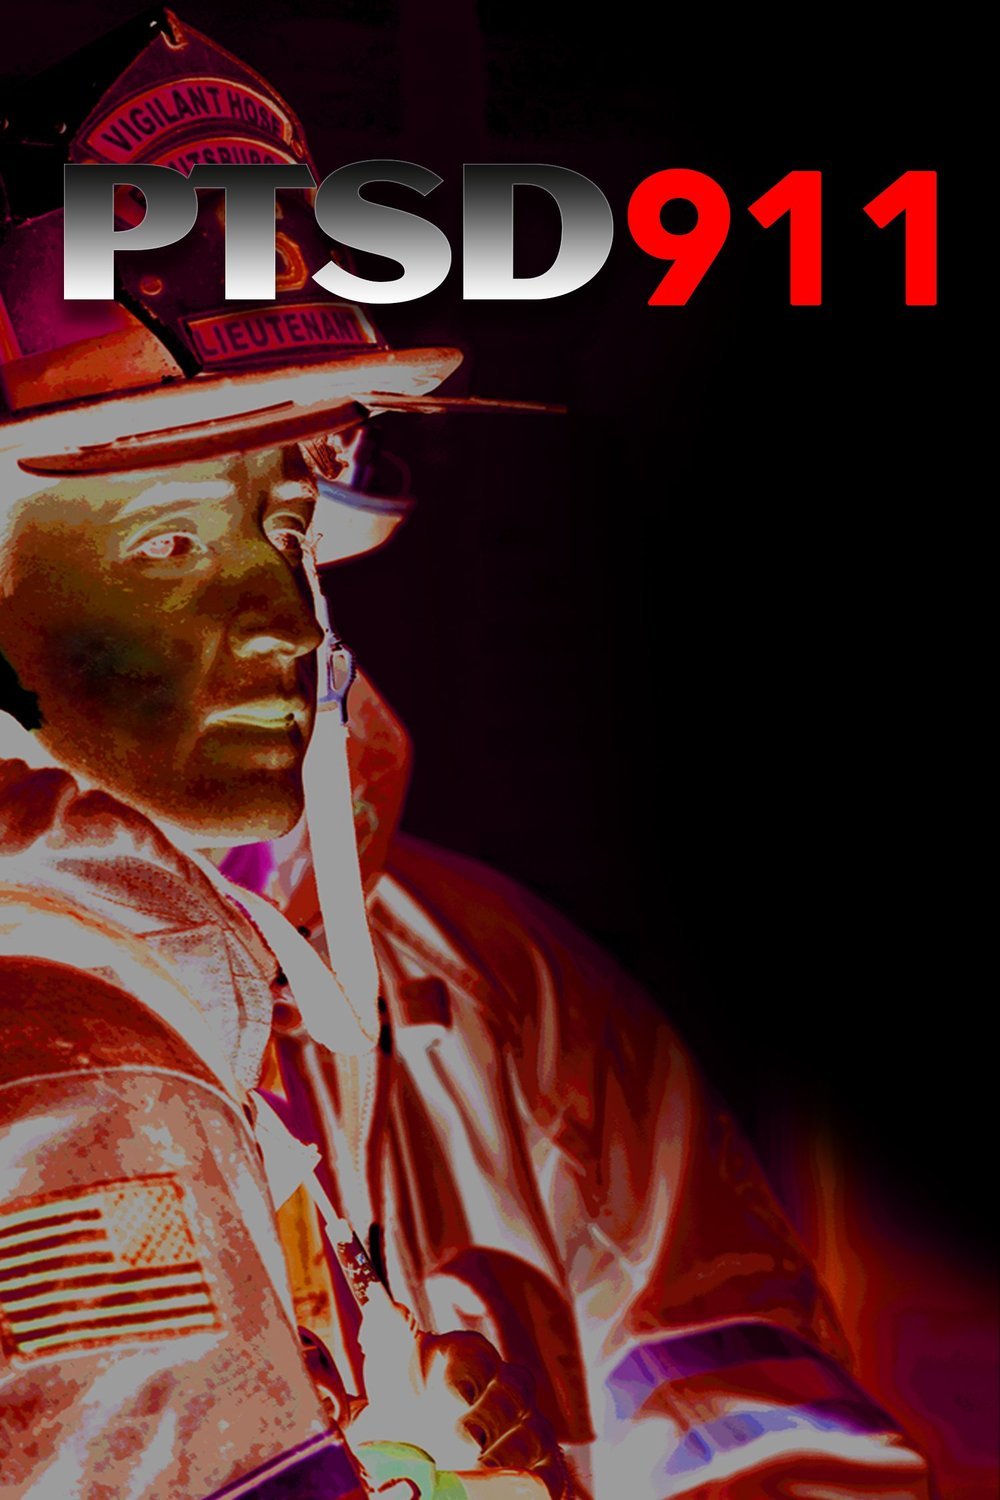 L'affiche du film Ptsd911